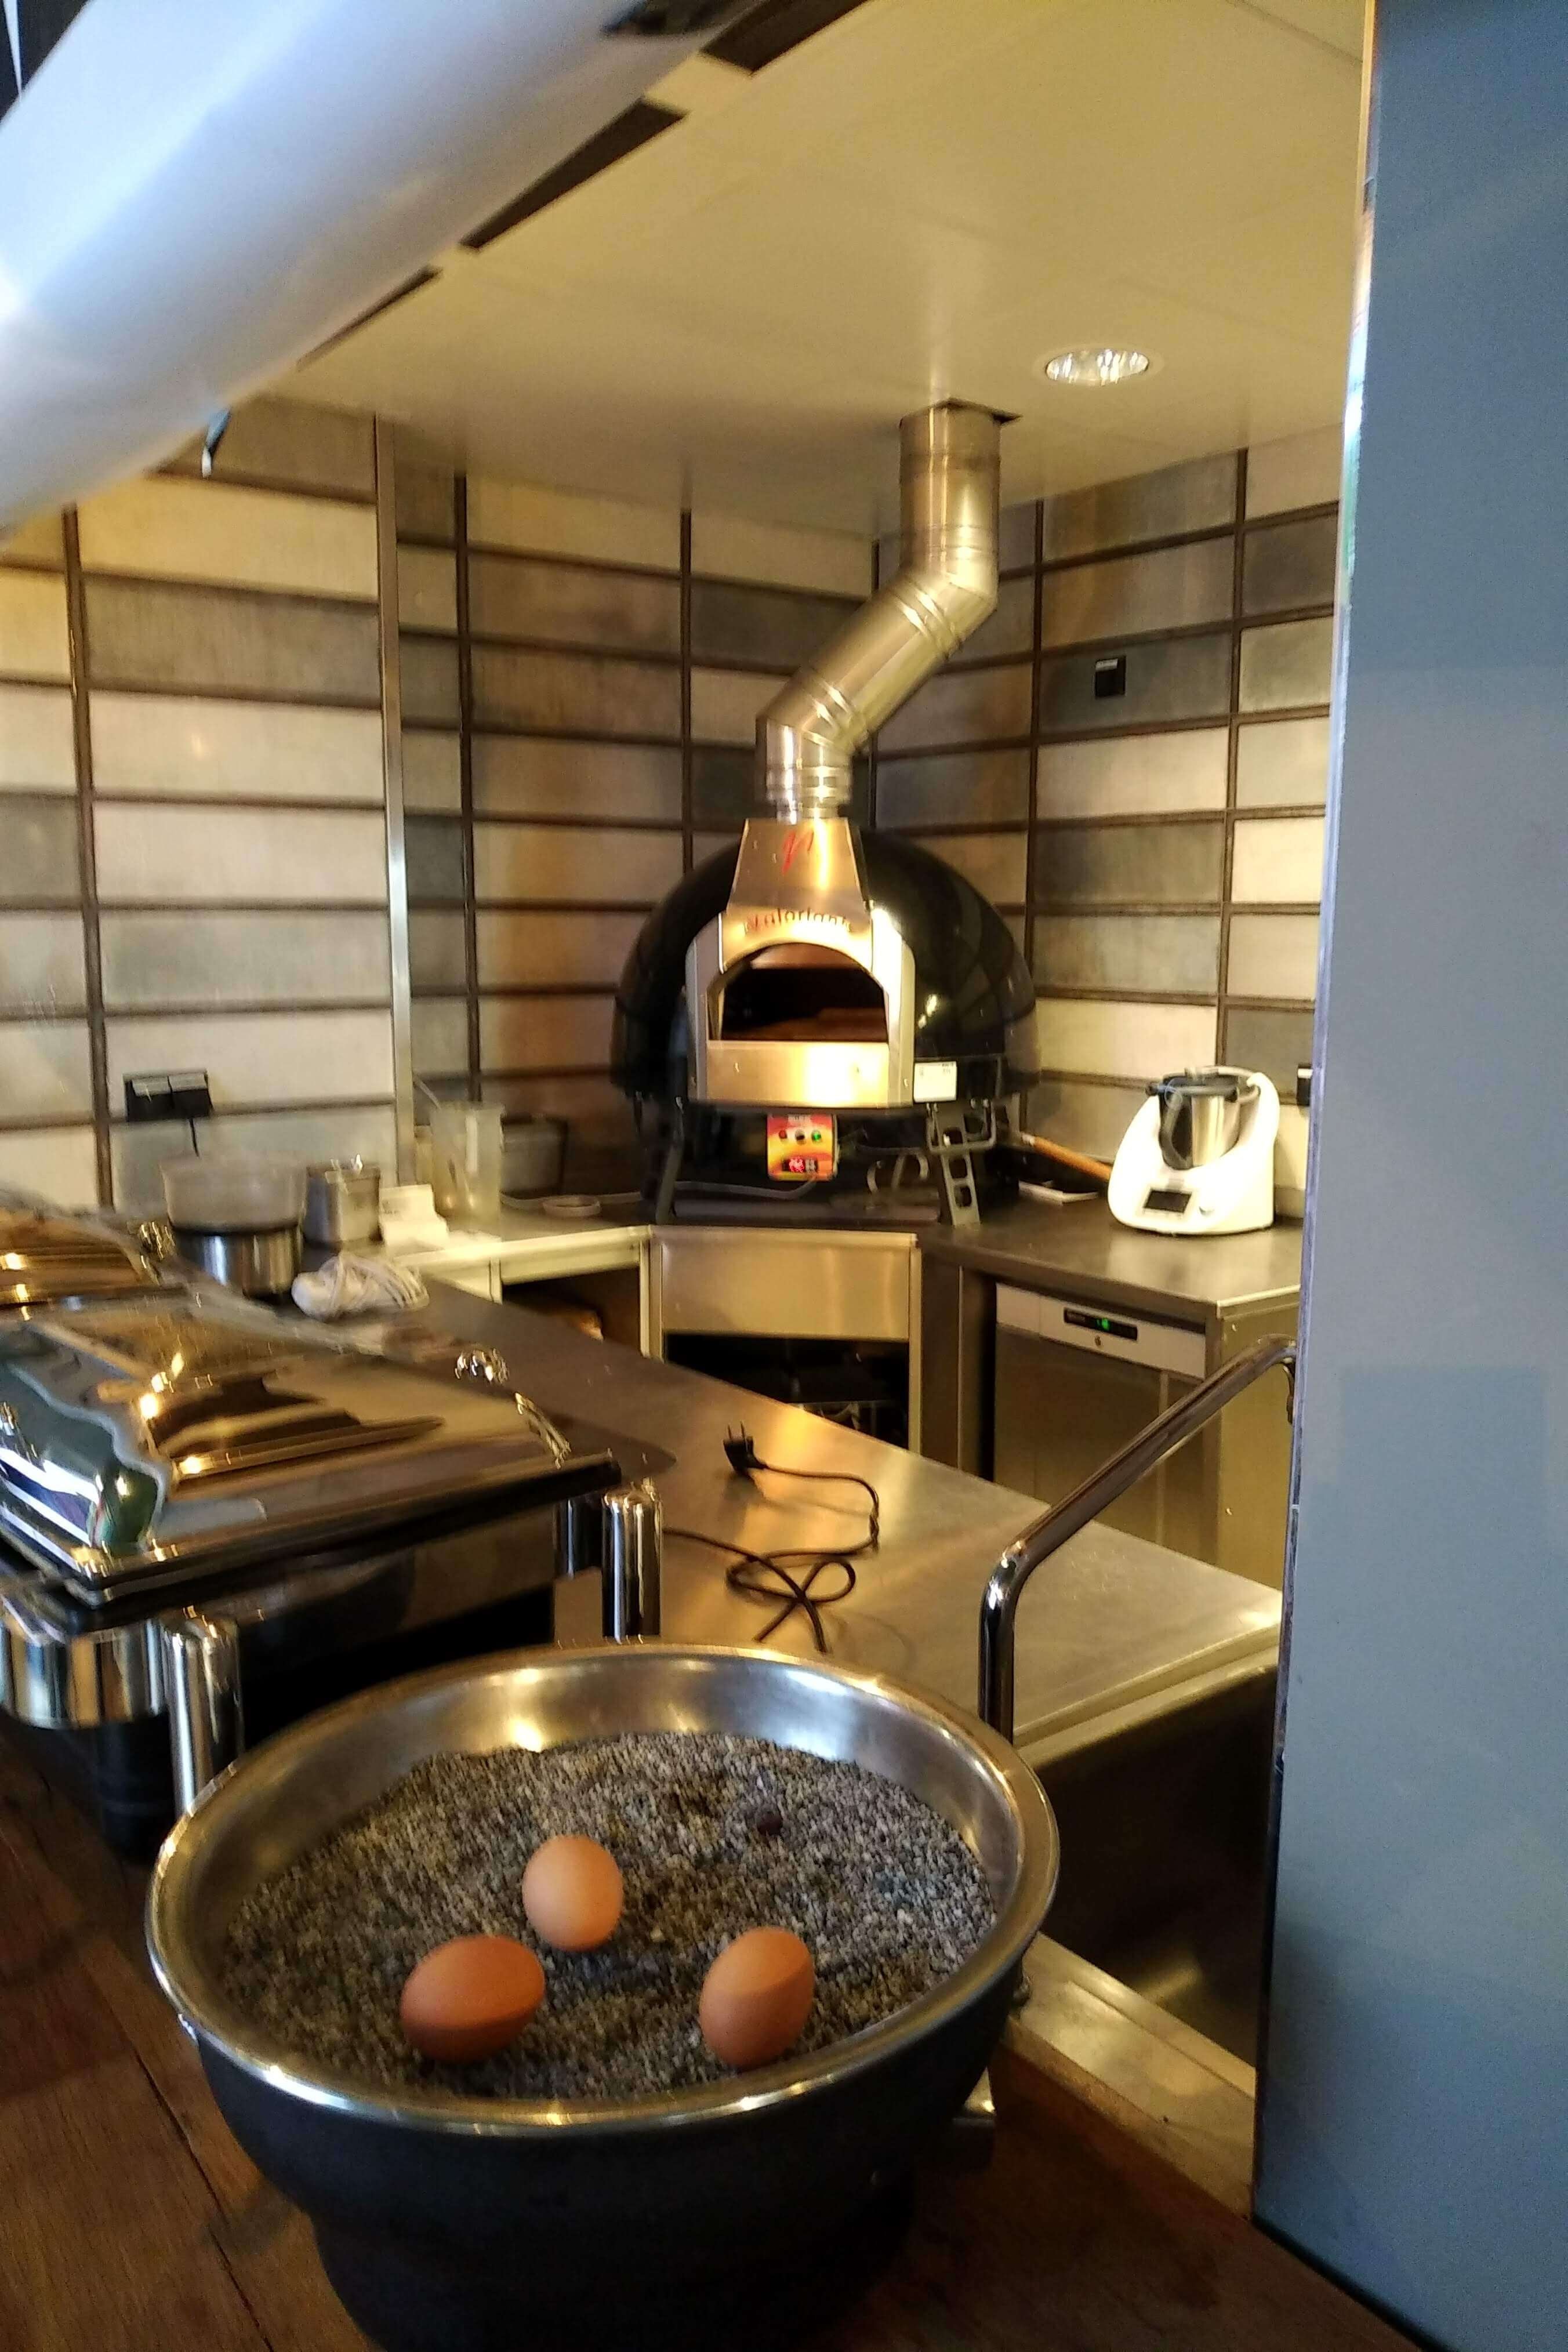 Valoriani Baby: Pizzaofen mit Holzbefeuerung und 75cm Durchmesser, inkl. kompletter Basis, schwarz